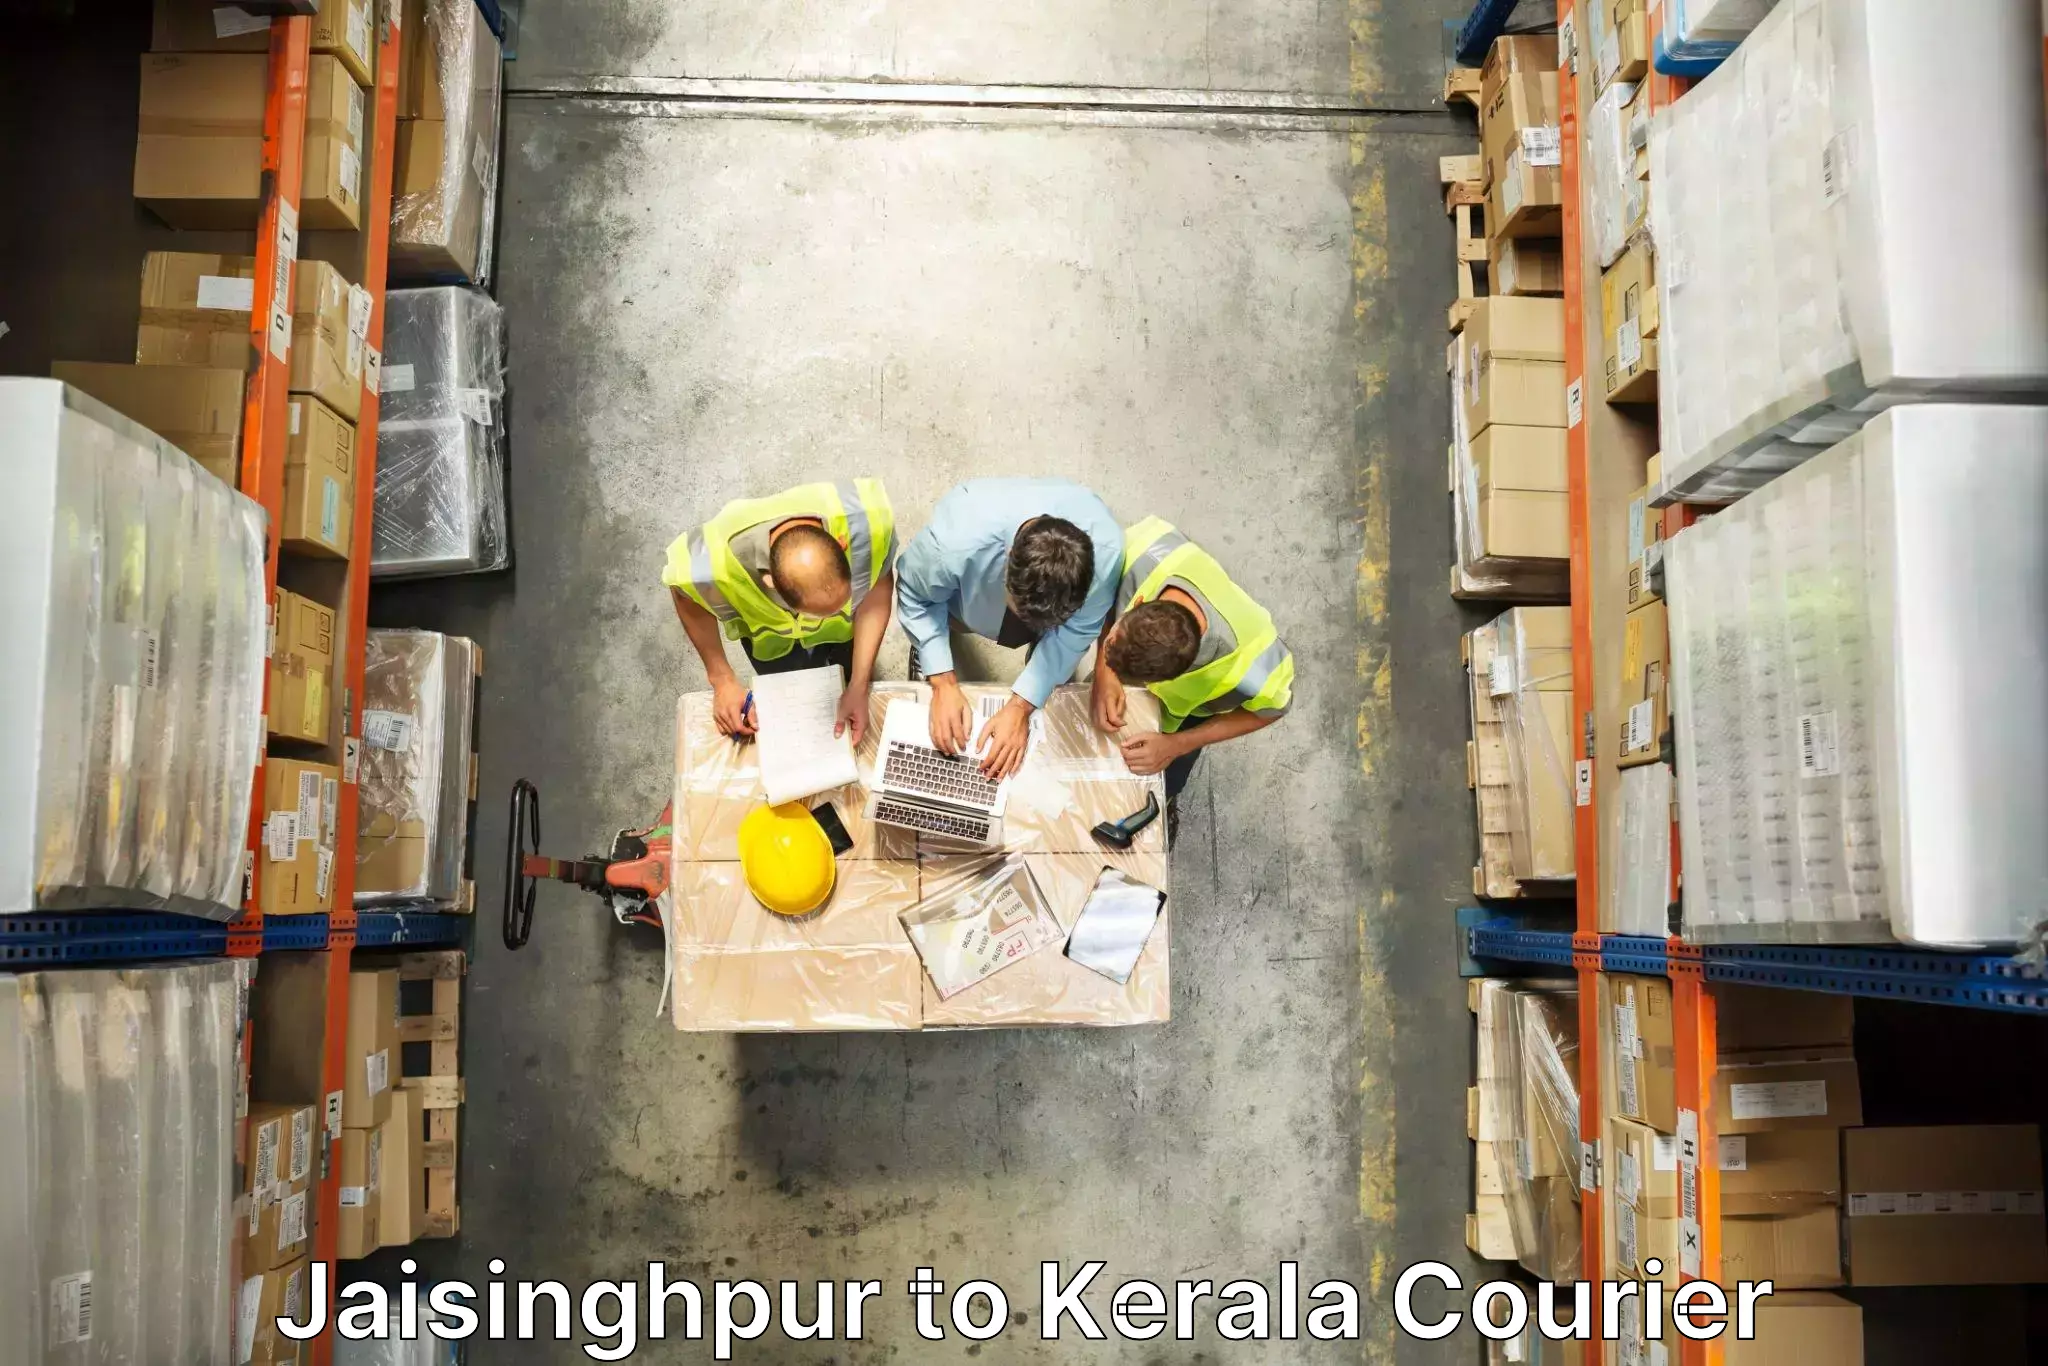 Efficient moving company Jaisinghpur to Kerala